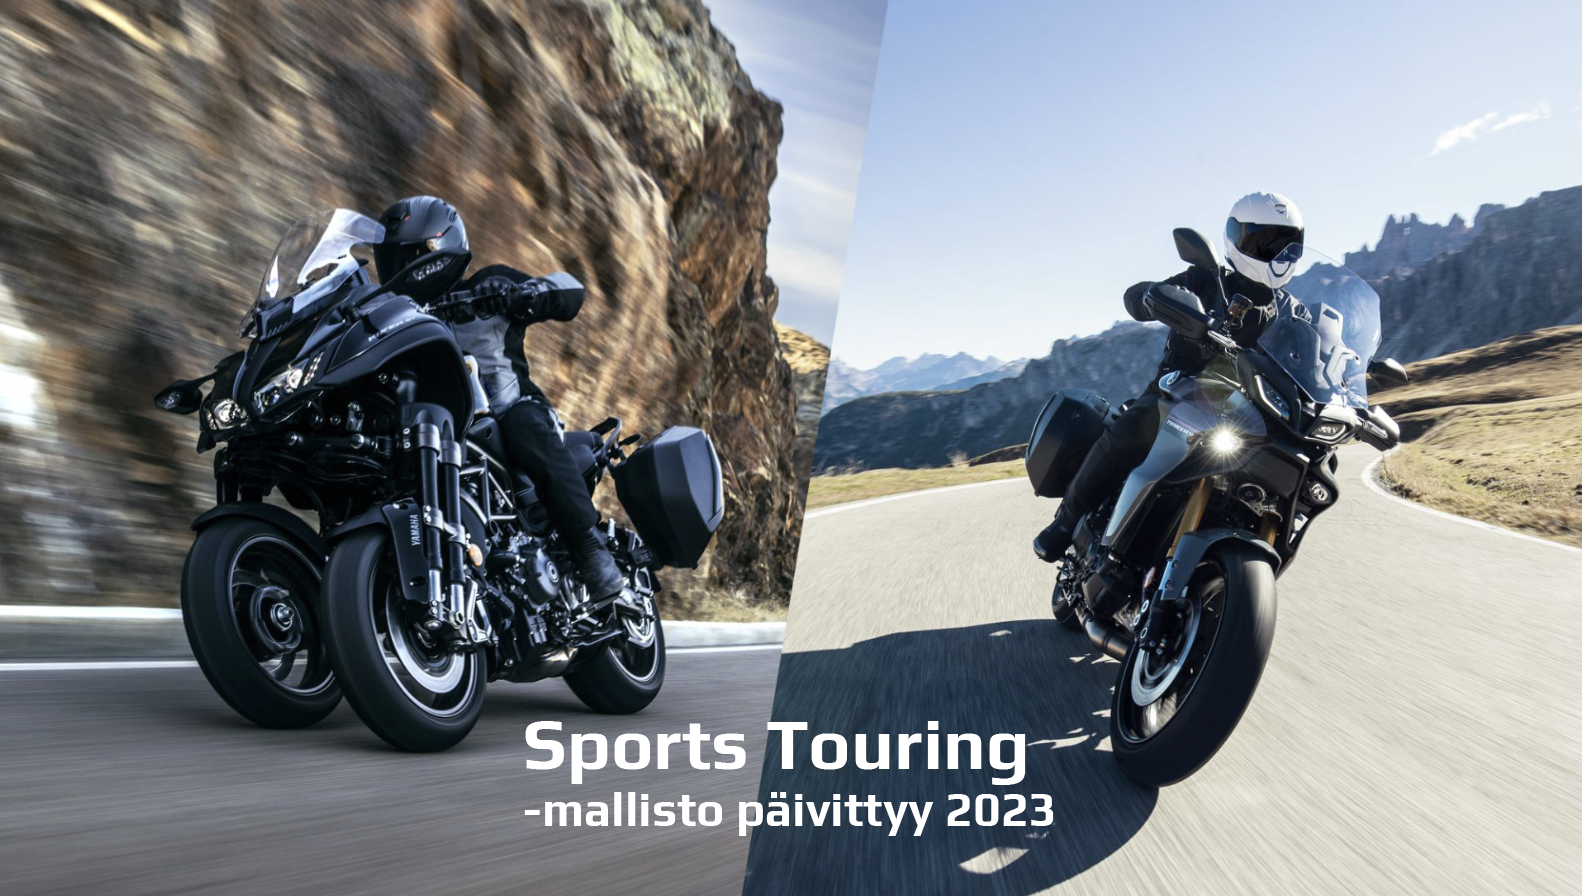 Yamaha laajentaa ja päivittää Sports Touring -mallistoa kaudelle 2023